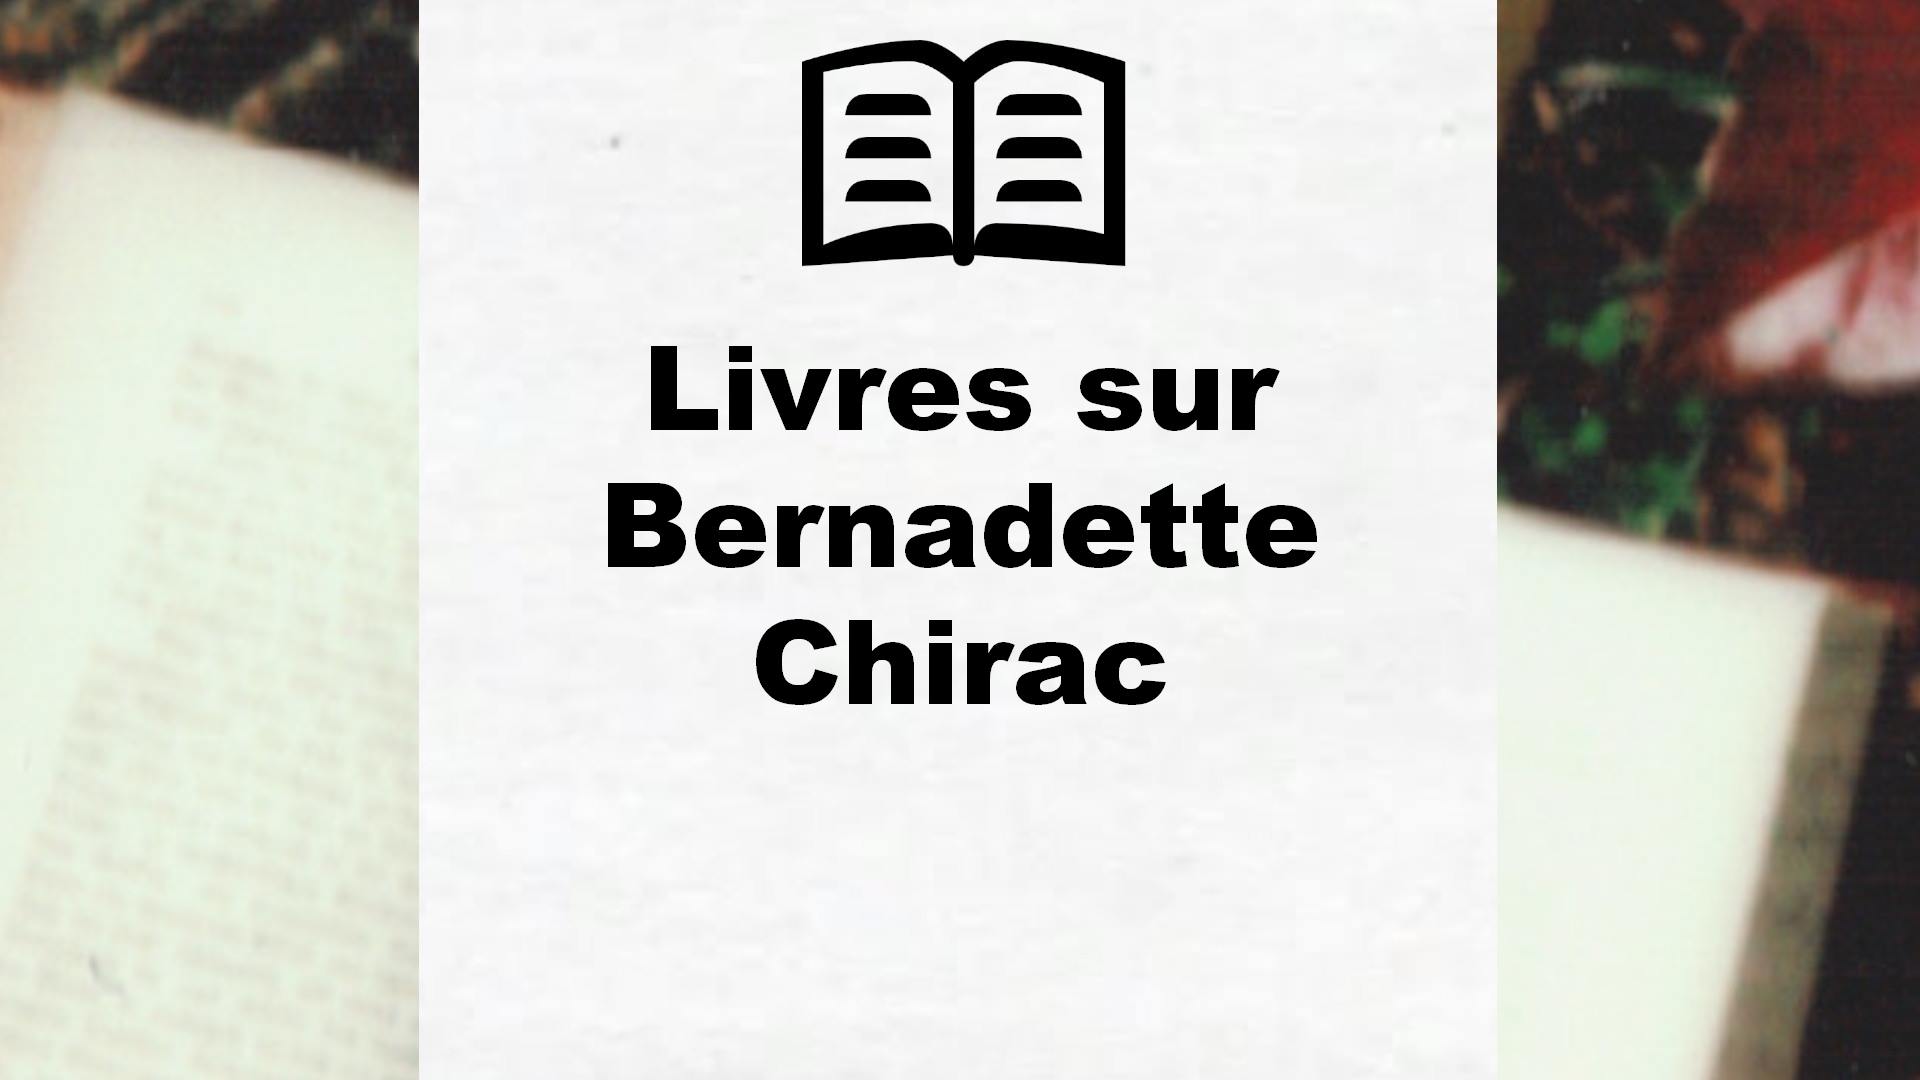 Livres sur Bernadette Chirac